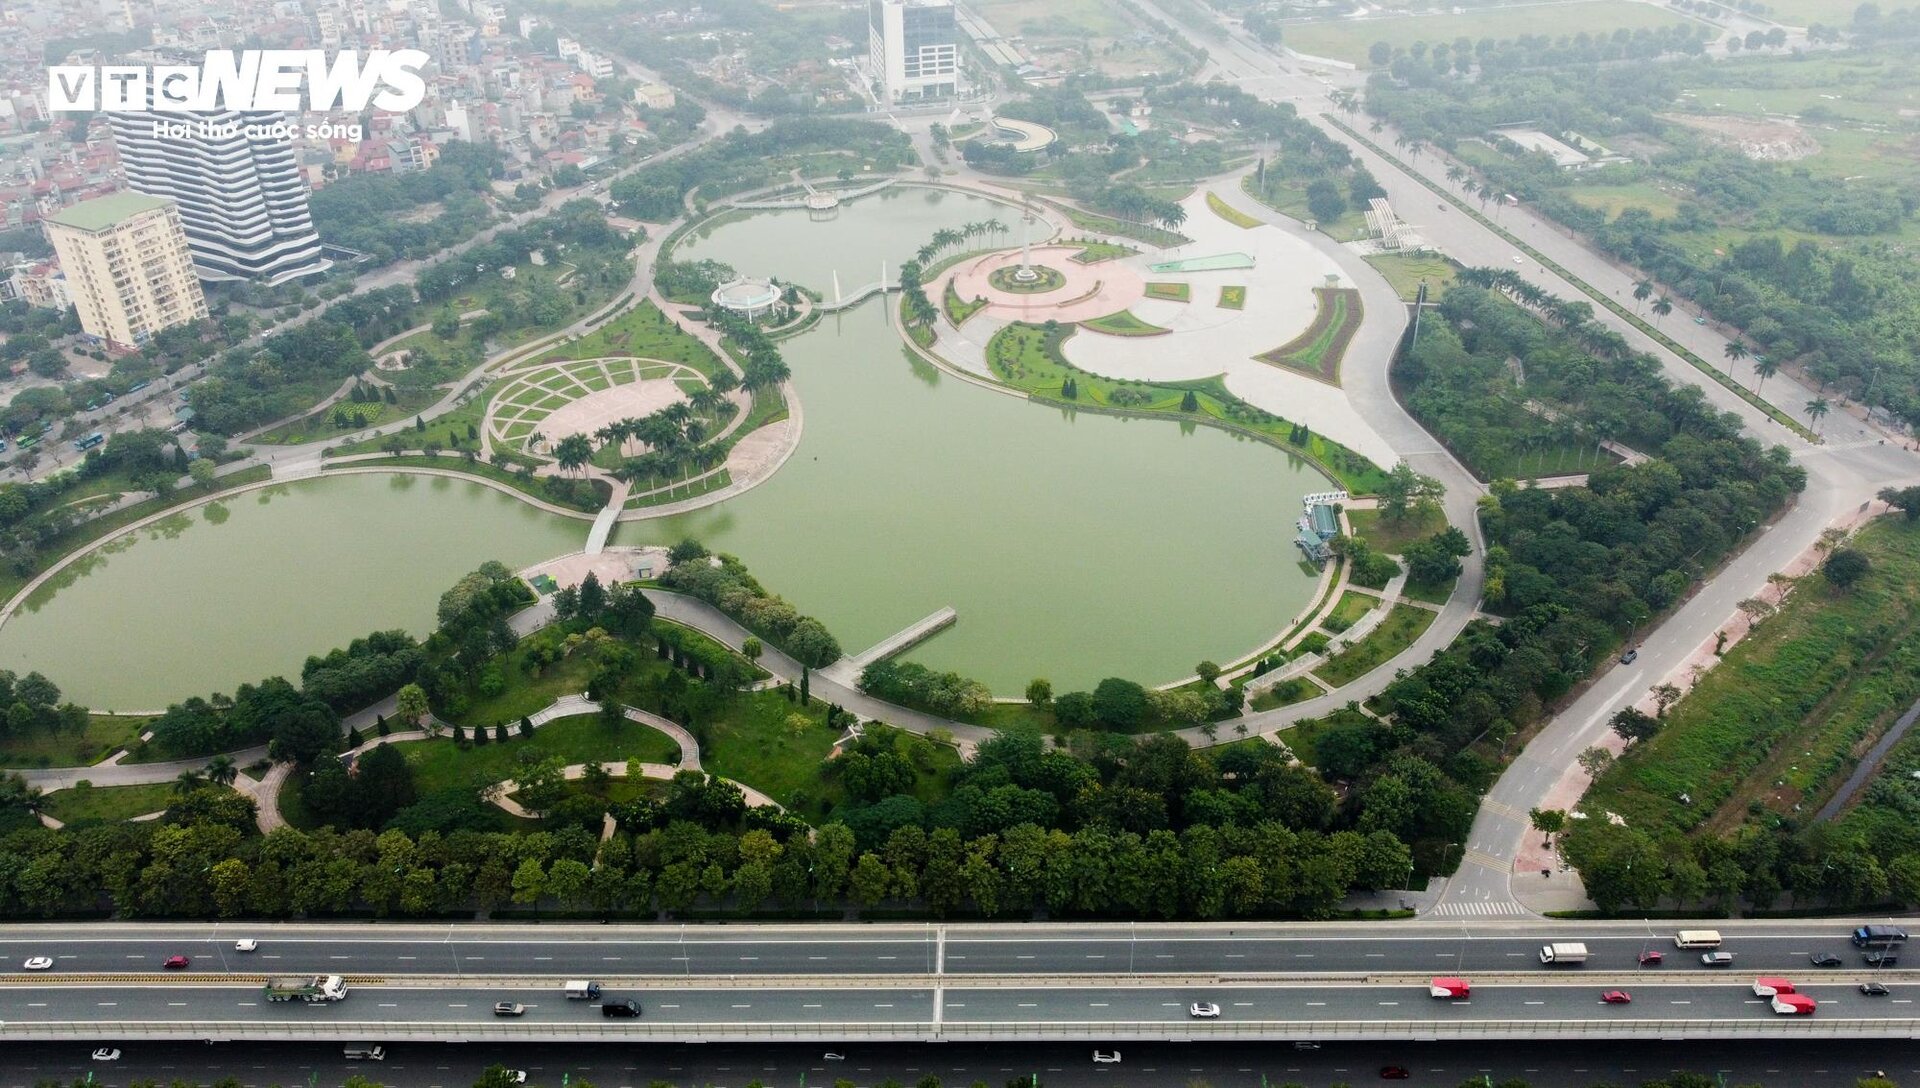 Cận cảnh 2 tuyến đường ở Hà Nội được đề xuất thiết kế làn dành riêng cho xe đạp - Ảnh 1.